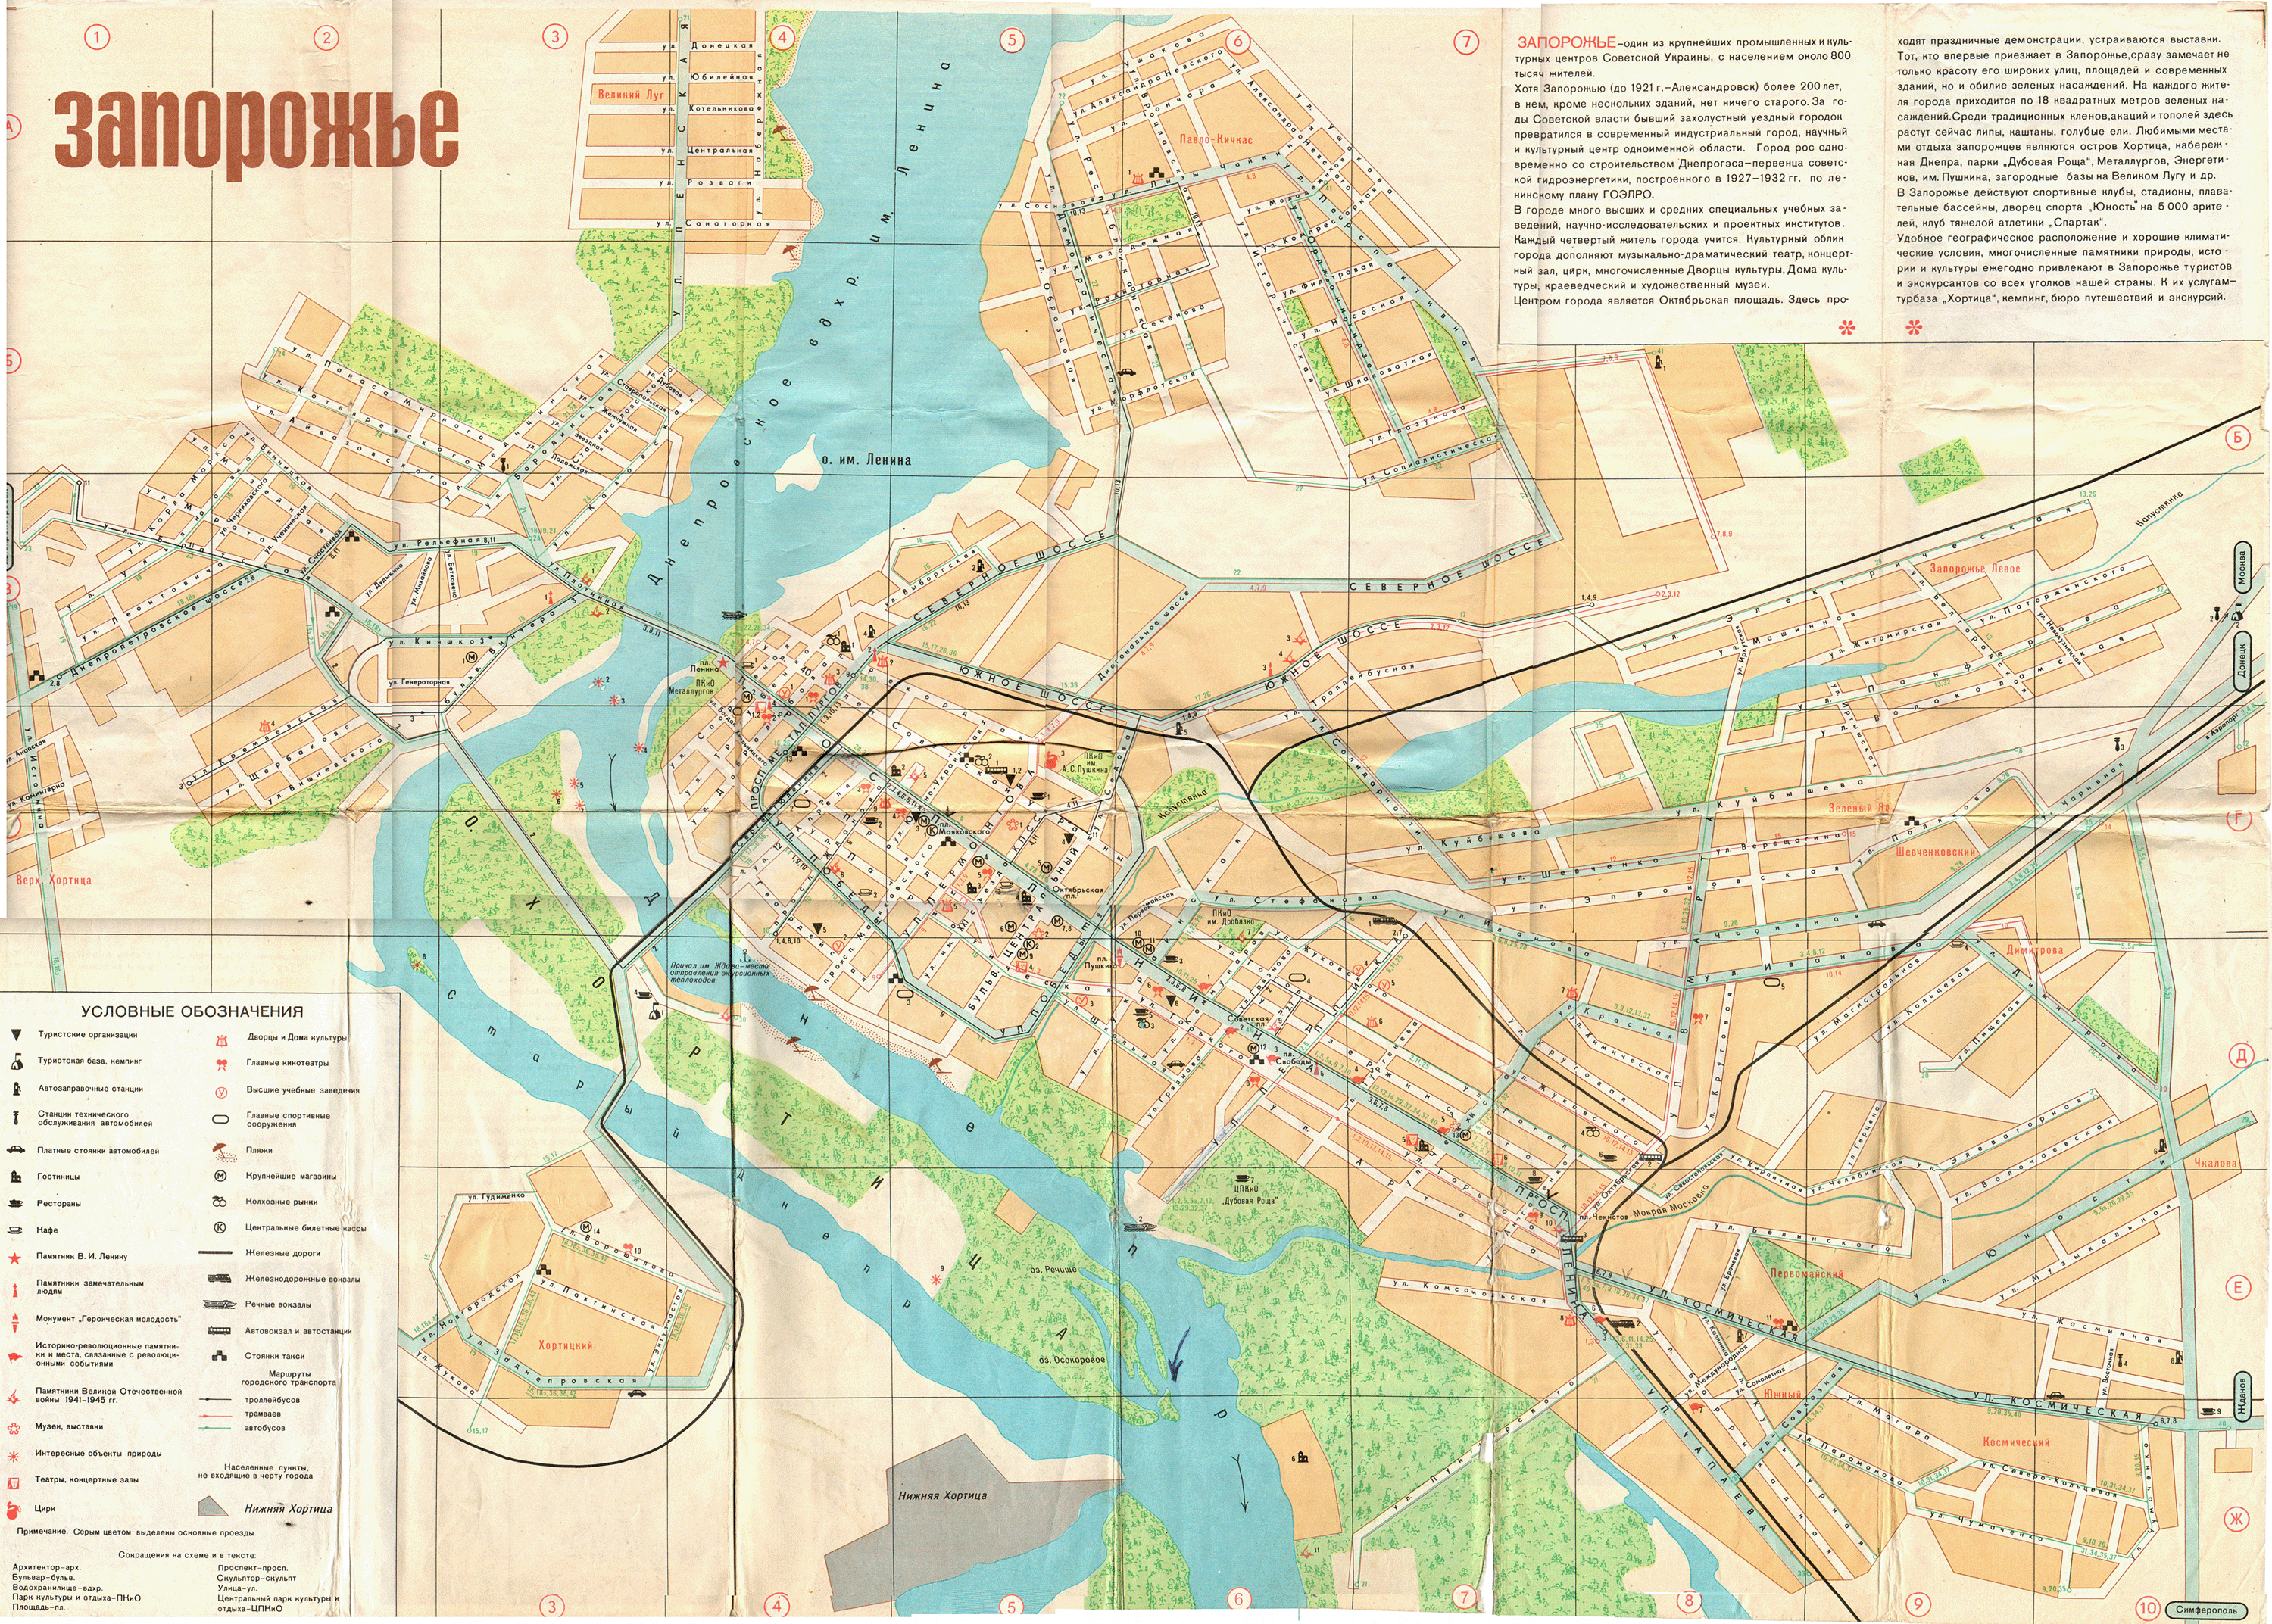 Zaporizhzhia — Maps